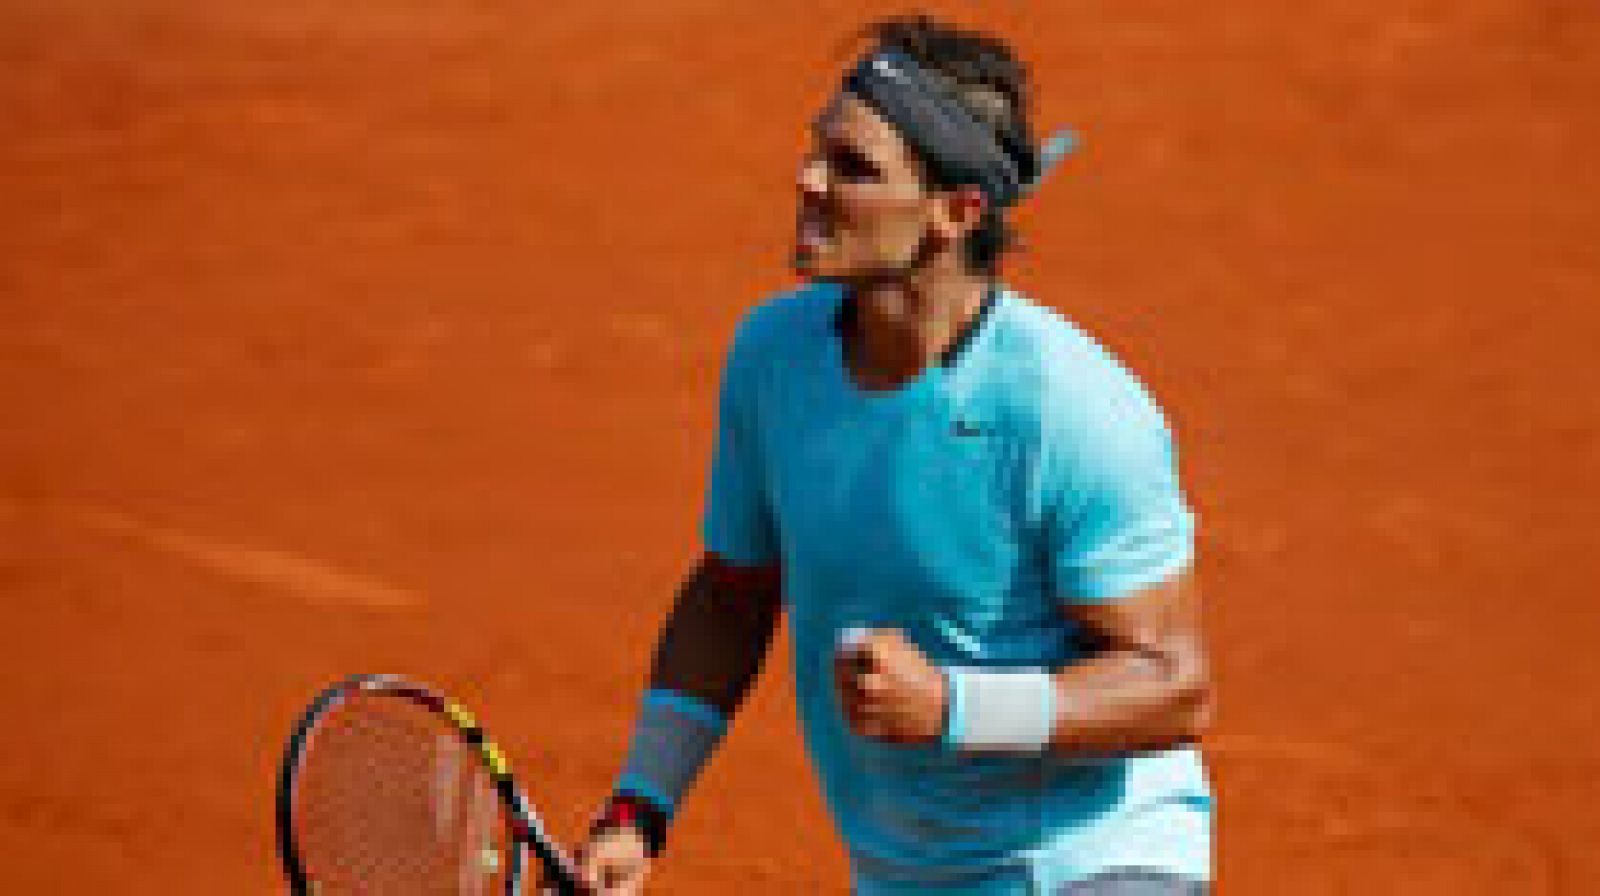 El tenista español Rafa Nadal se mostró "muy contento" este viernes por alcanzar por novena vez la final de Roland Garros, segundo 'grande' de la temporada, después de batir en semifinales al escocés Andy Murray, y apuntó que volvió a demostrar su mejor versión, la cual necesitará el domingo para imponerse a Novak Djokovic. 
